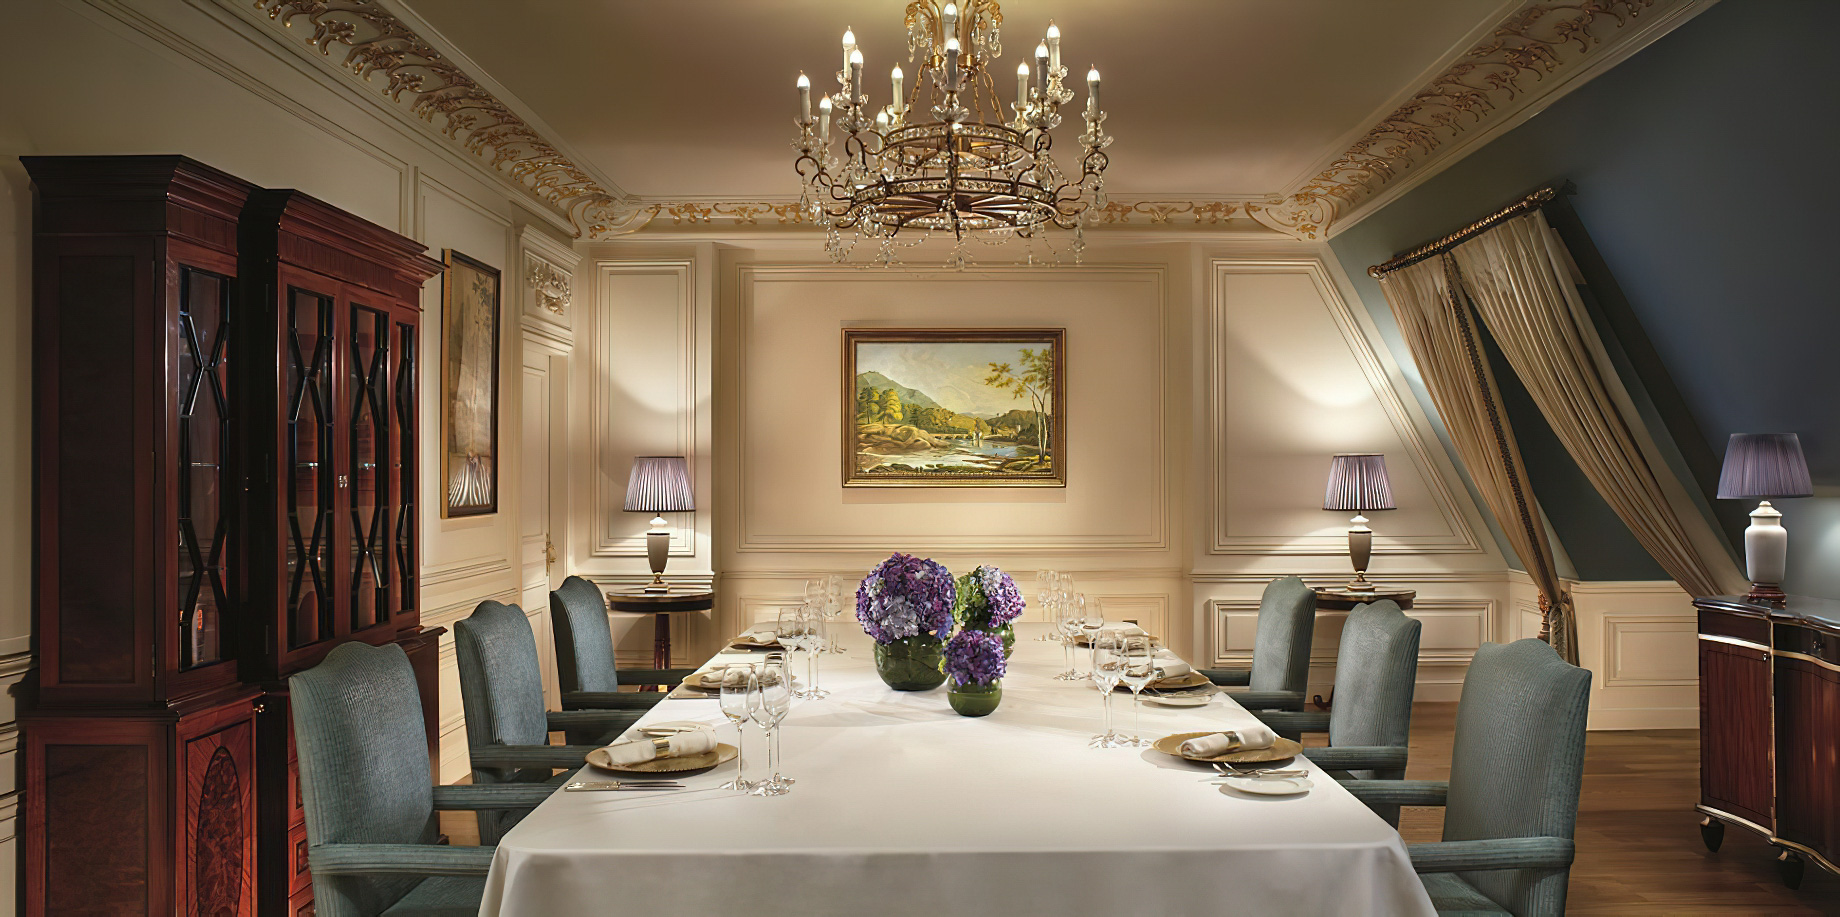 The Ritz-Carlton, Tianjin Hotel – Tianjin, China – The Ritz-Carlton Suite Dining Room